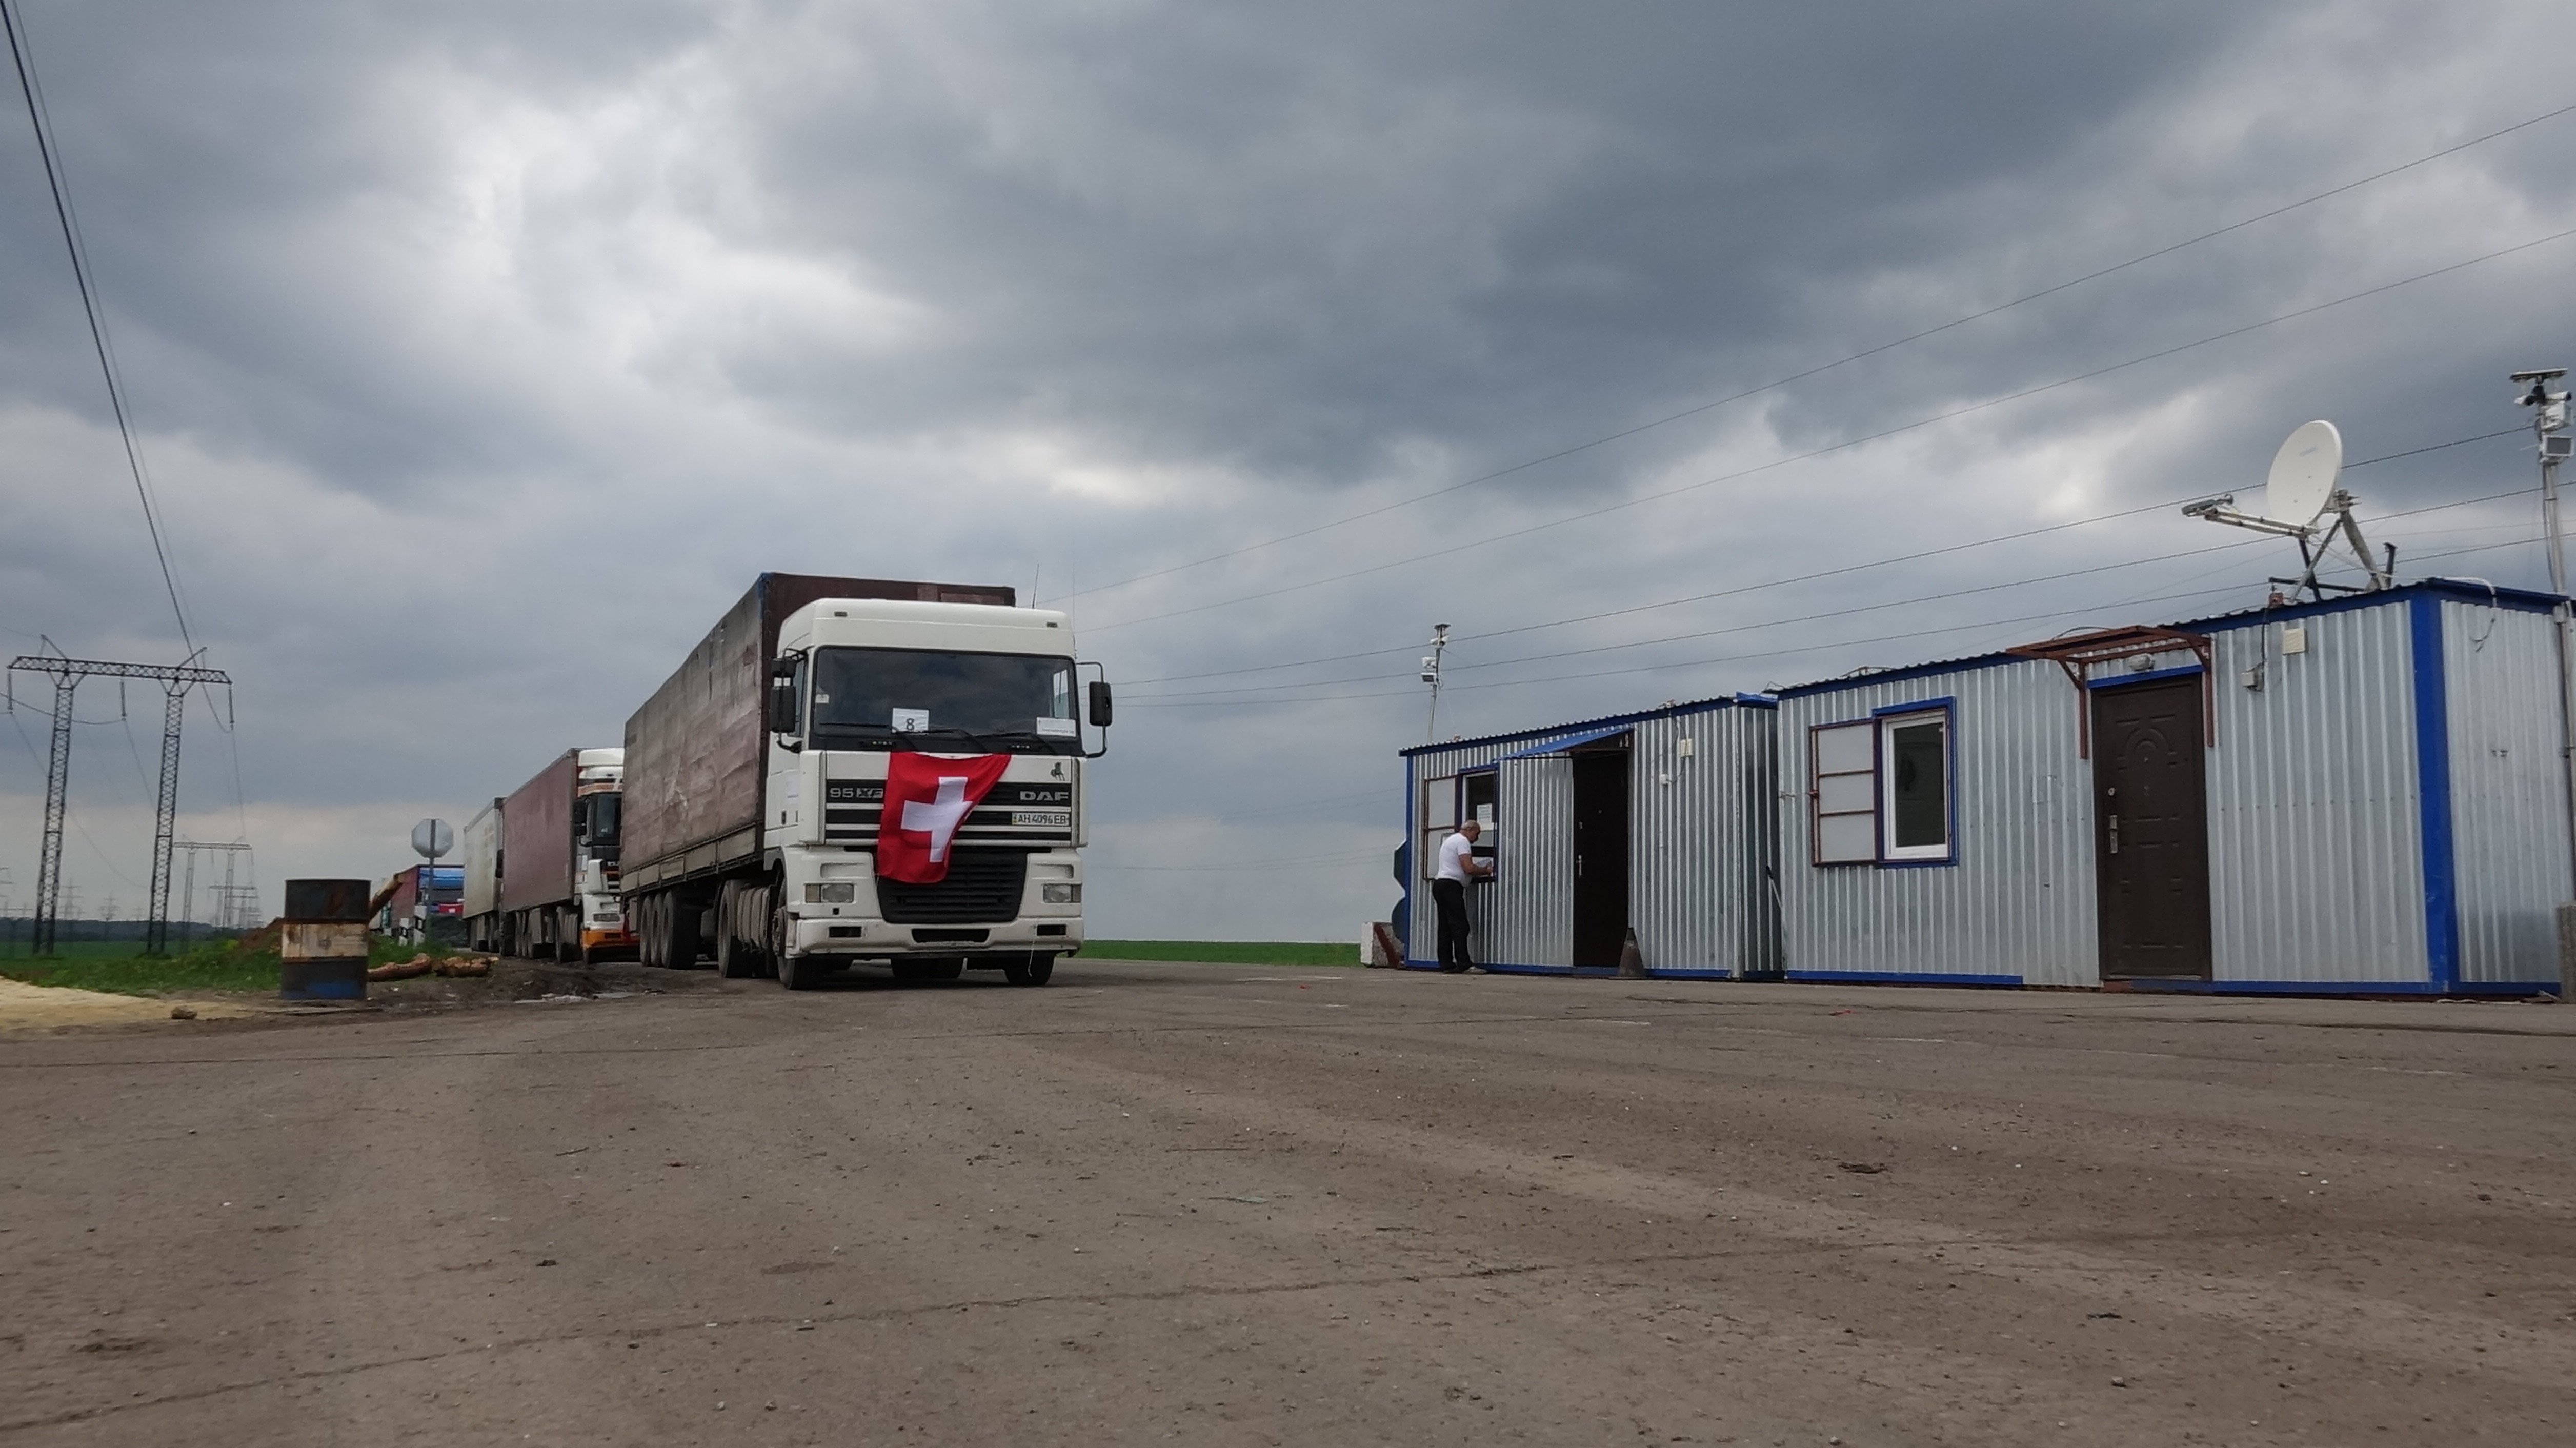 – Arrivée à Donetsk du convoi humanitaire suisse pour l’Ukraine orientale. La Suisse a envoyé un convoi chargé de 300 tonnes de produits chimiques pour le traitement de l’eau potable. 